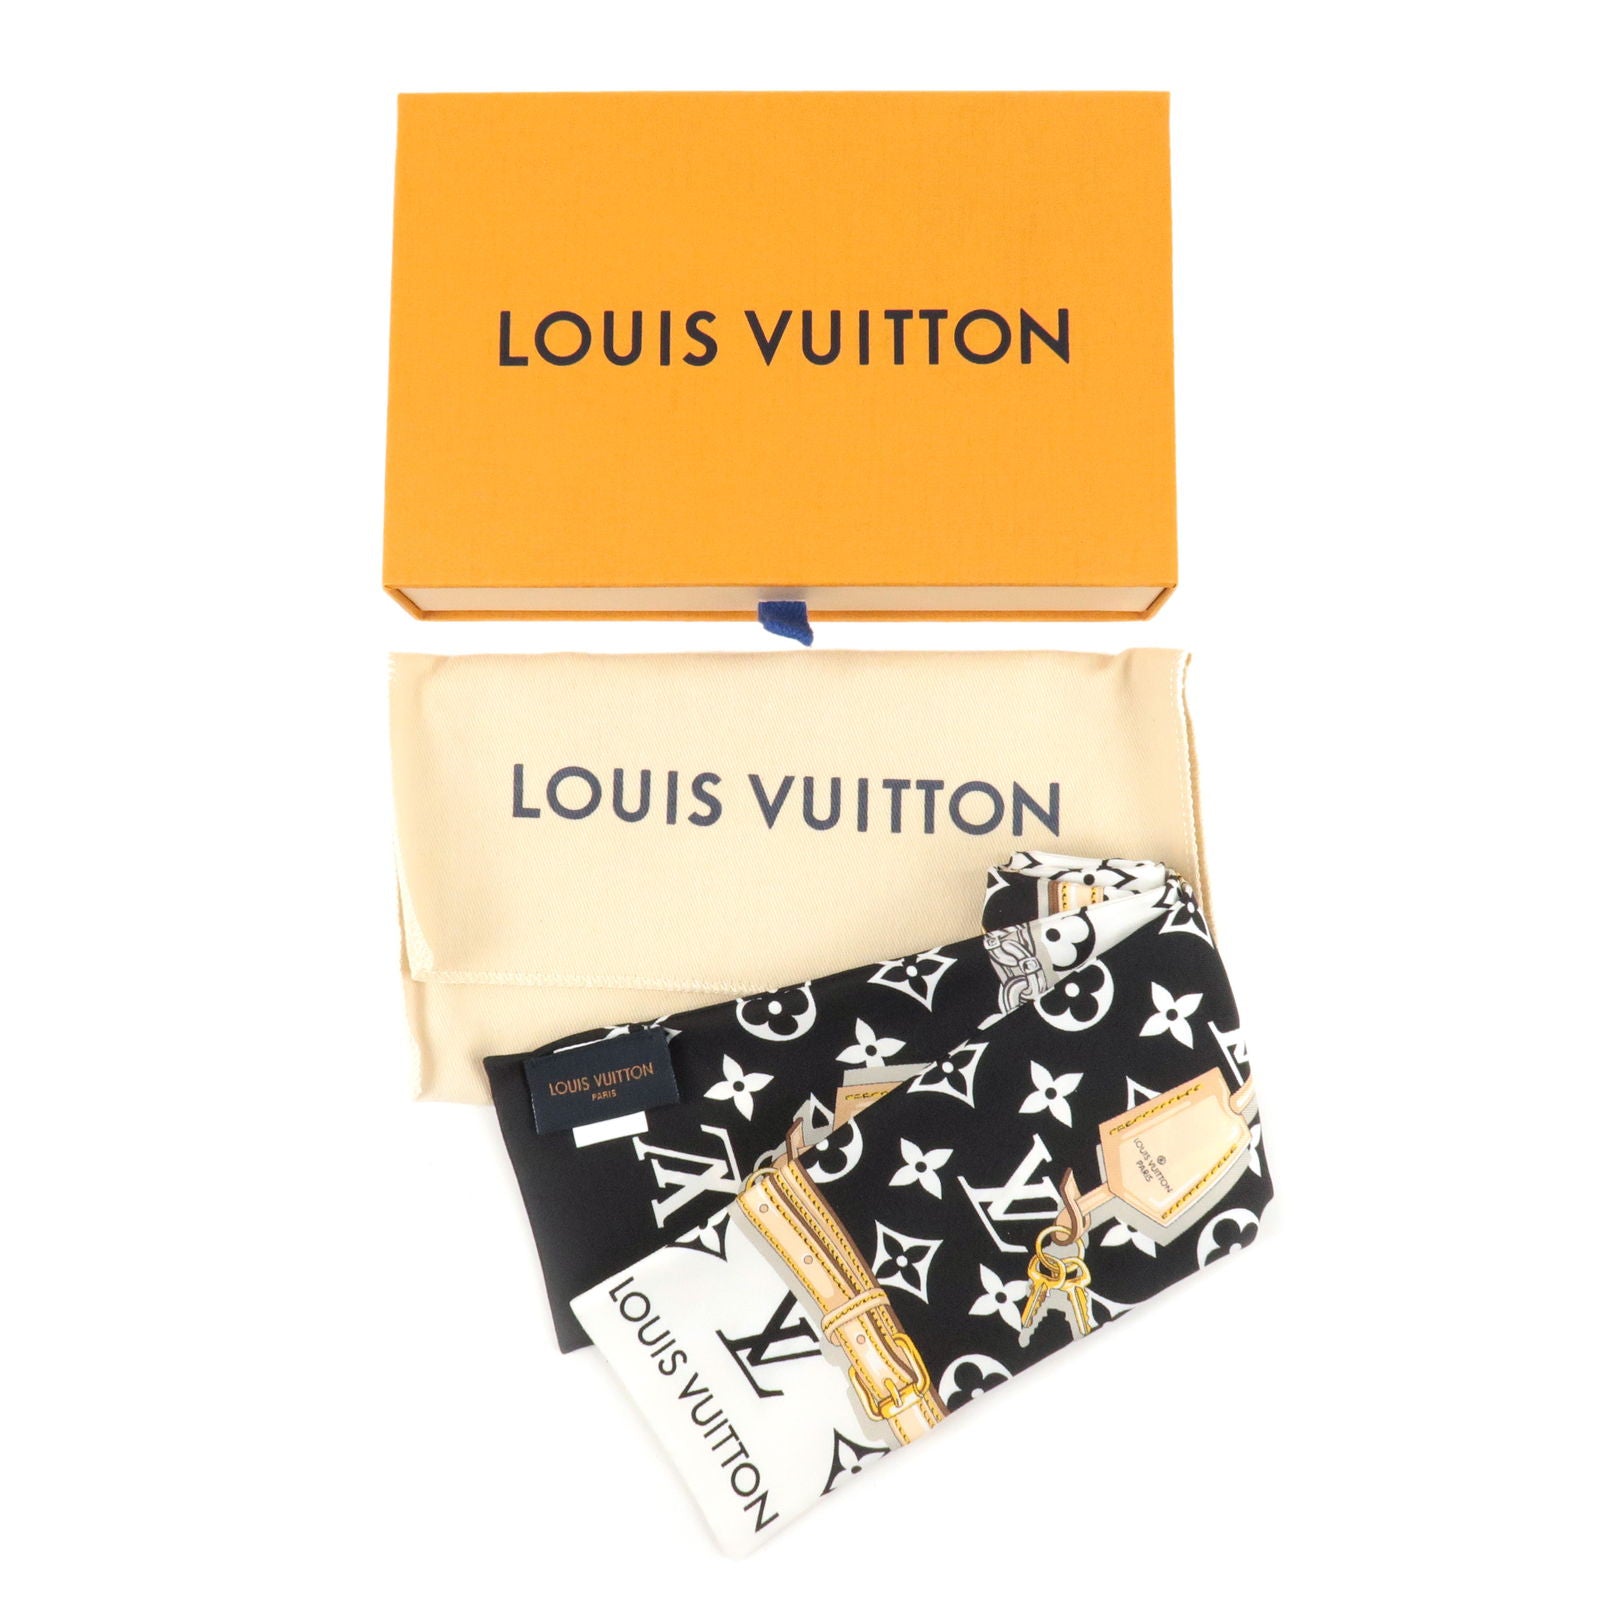 LOUIS VUITTON LOUIS VUITTON Bandeau Monogram Confidential long scarf wrap  M78656 silk noir M78656